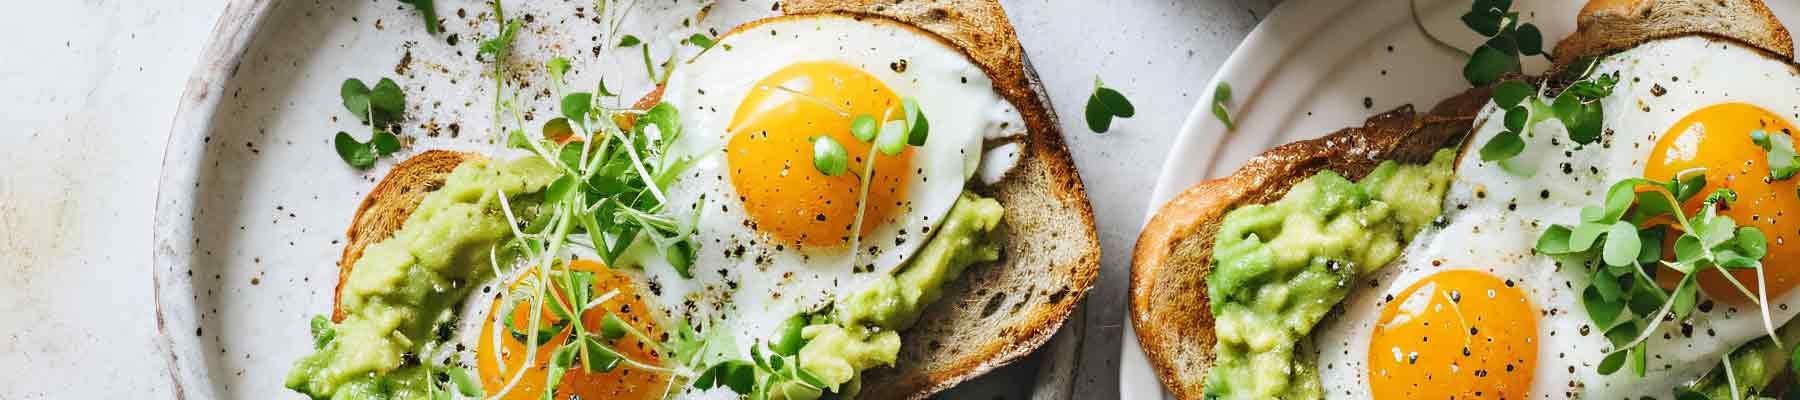 L'œuf est l’un des aliments les plus nutritifs.
